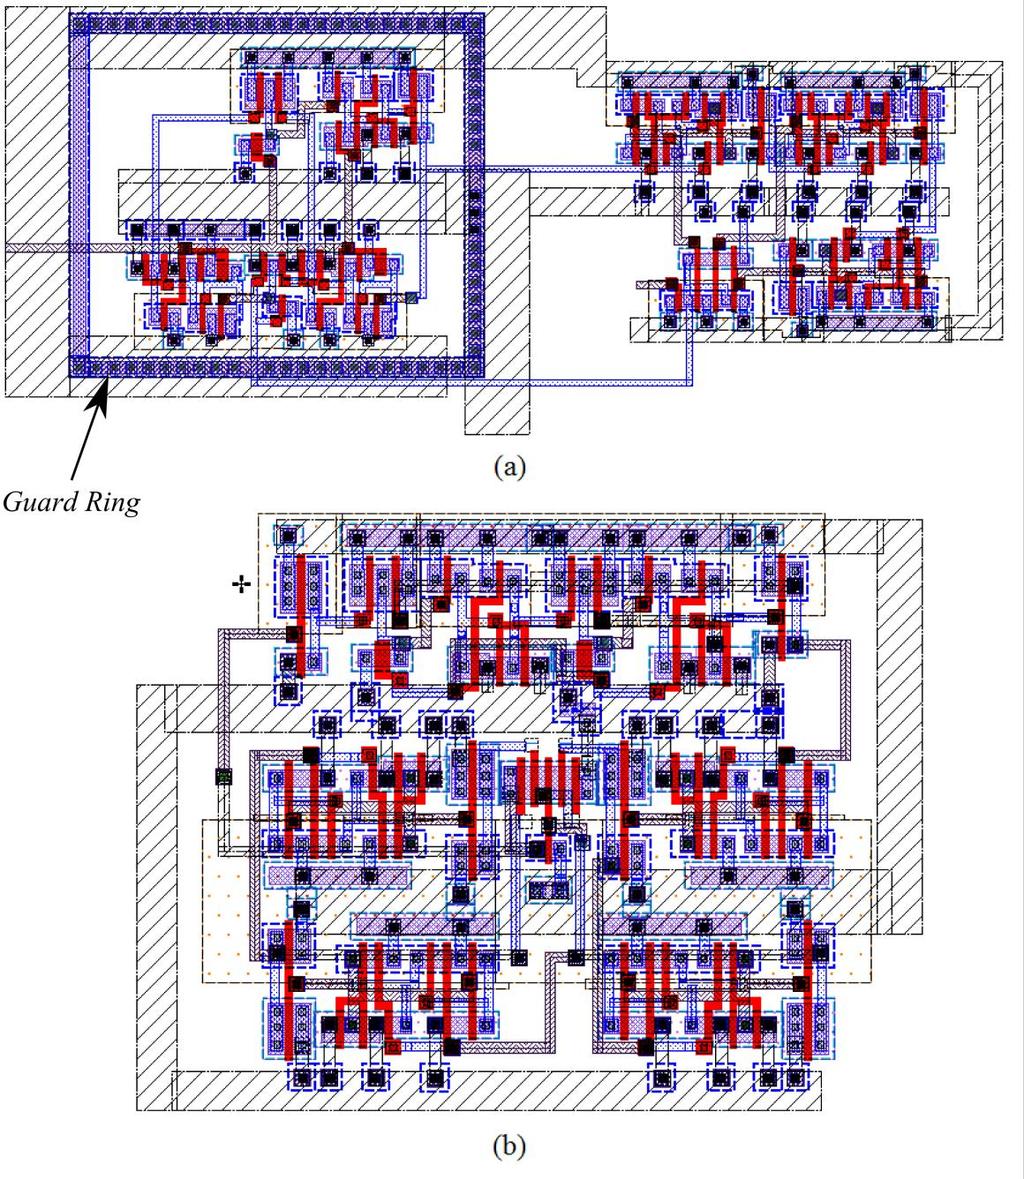 Os inversores utilizados nesses layouts são inversores da biblioteca padrão disponibilizada pela AMS, assim como a porta NAND de 4 entradas utilizada na versão com 3 D-FFs do Prescaler.